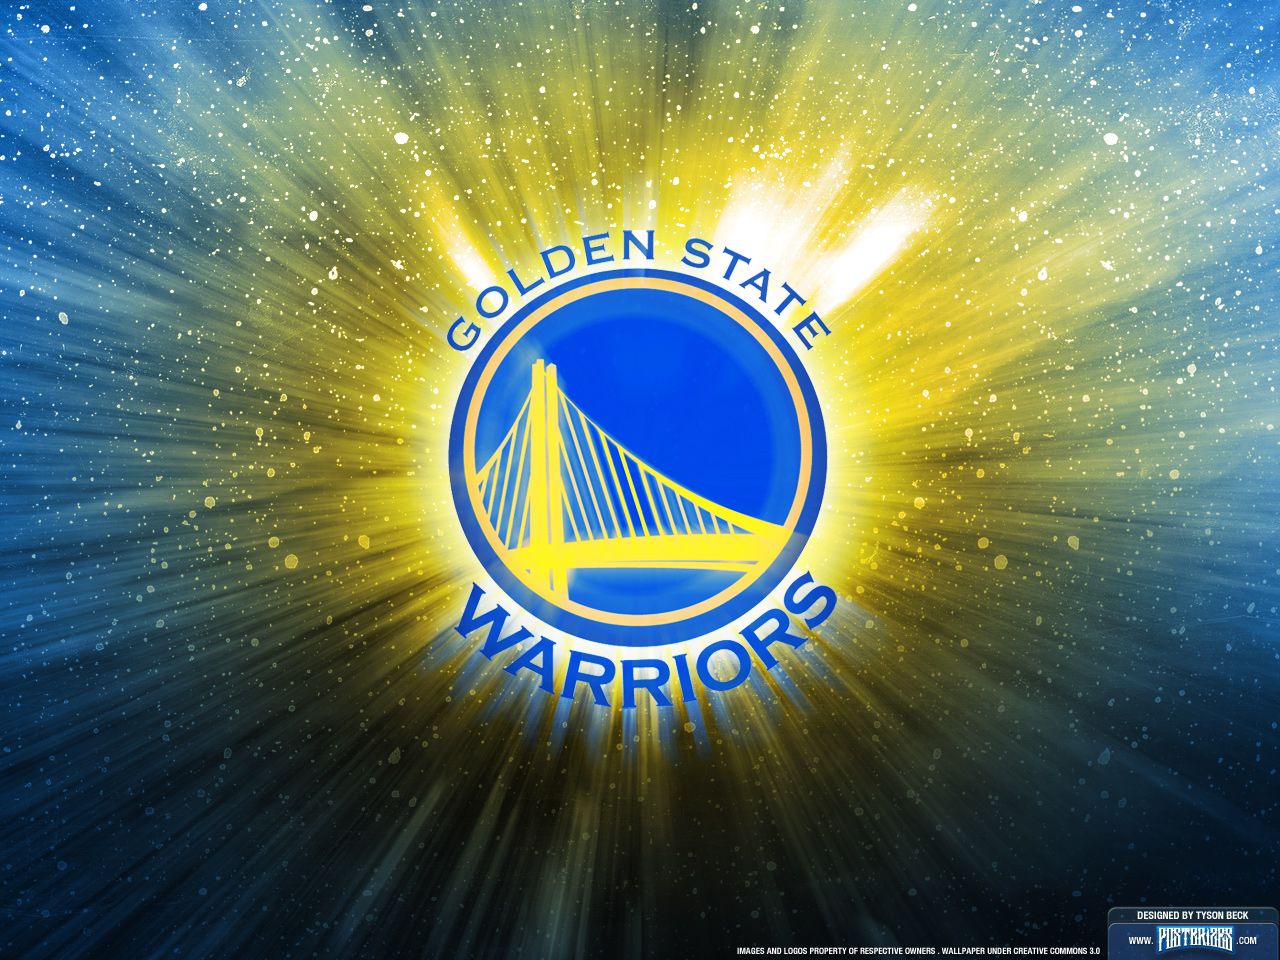 Golden State Warriors Logo , HD Wallpaper & Backgrounds